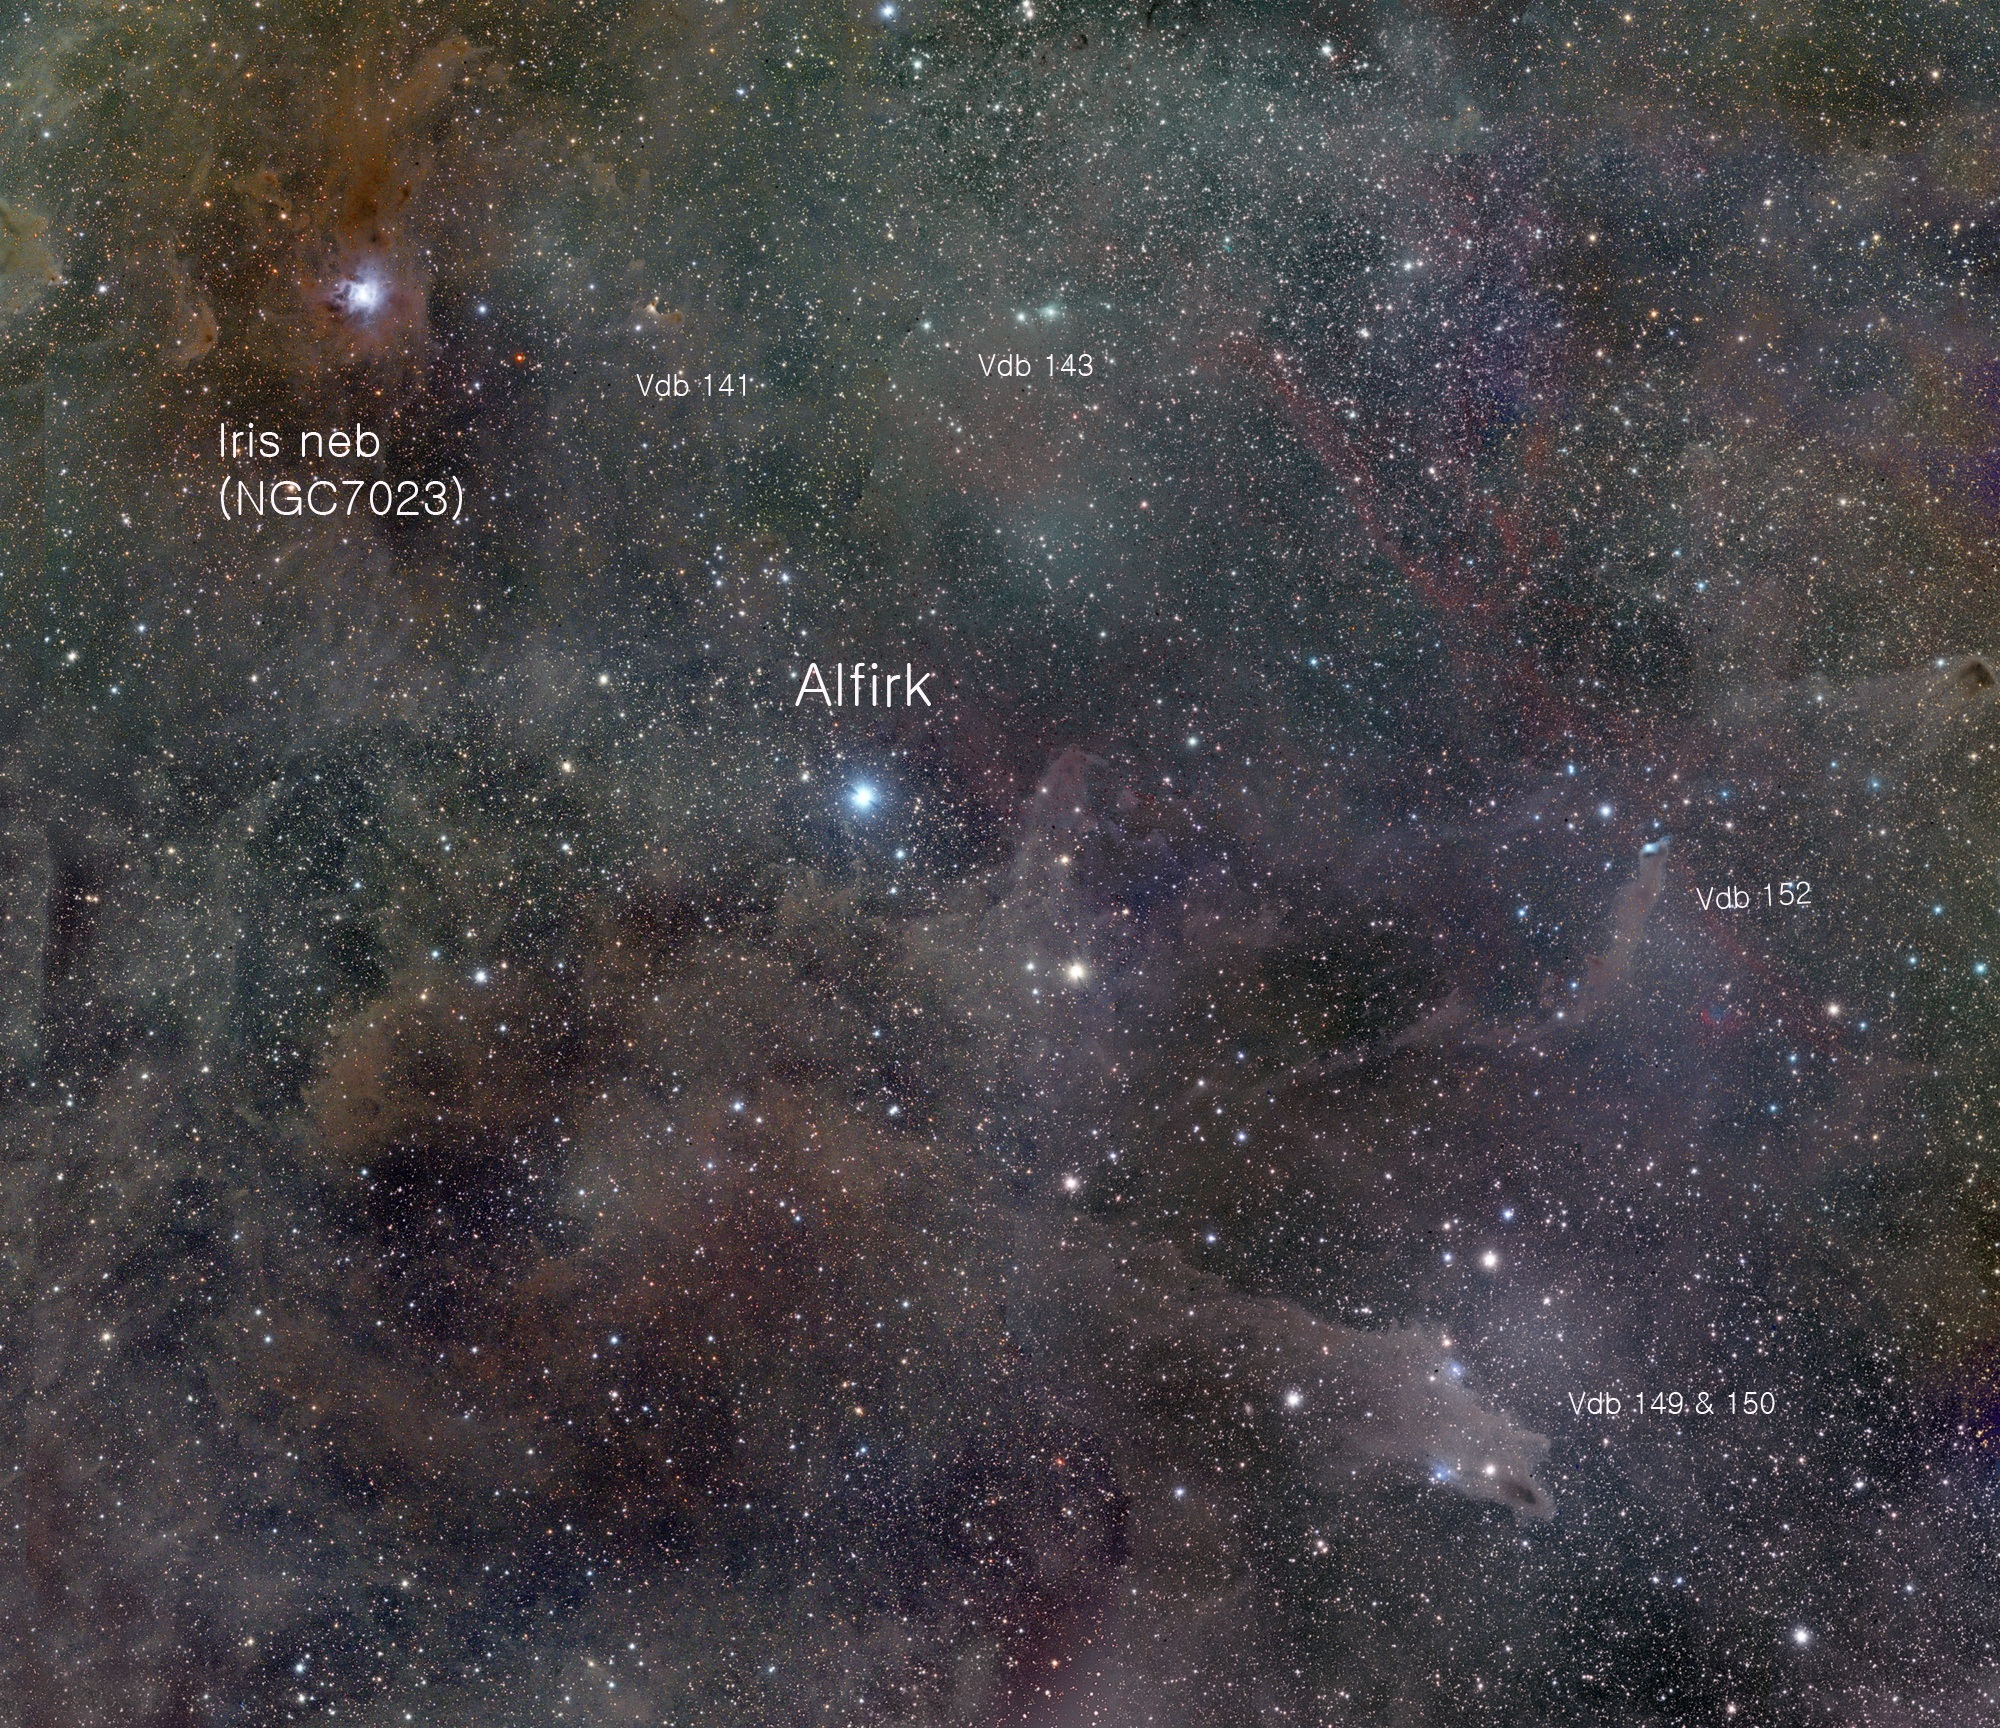 d148e2210b9f5e5f73741e3127ff89f8.jpg : Cepheus 베타별 주변의 암흑성운들-5 Frame mosaics